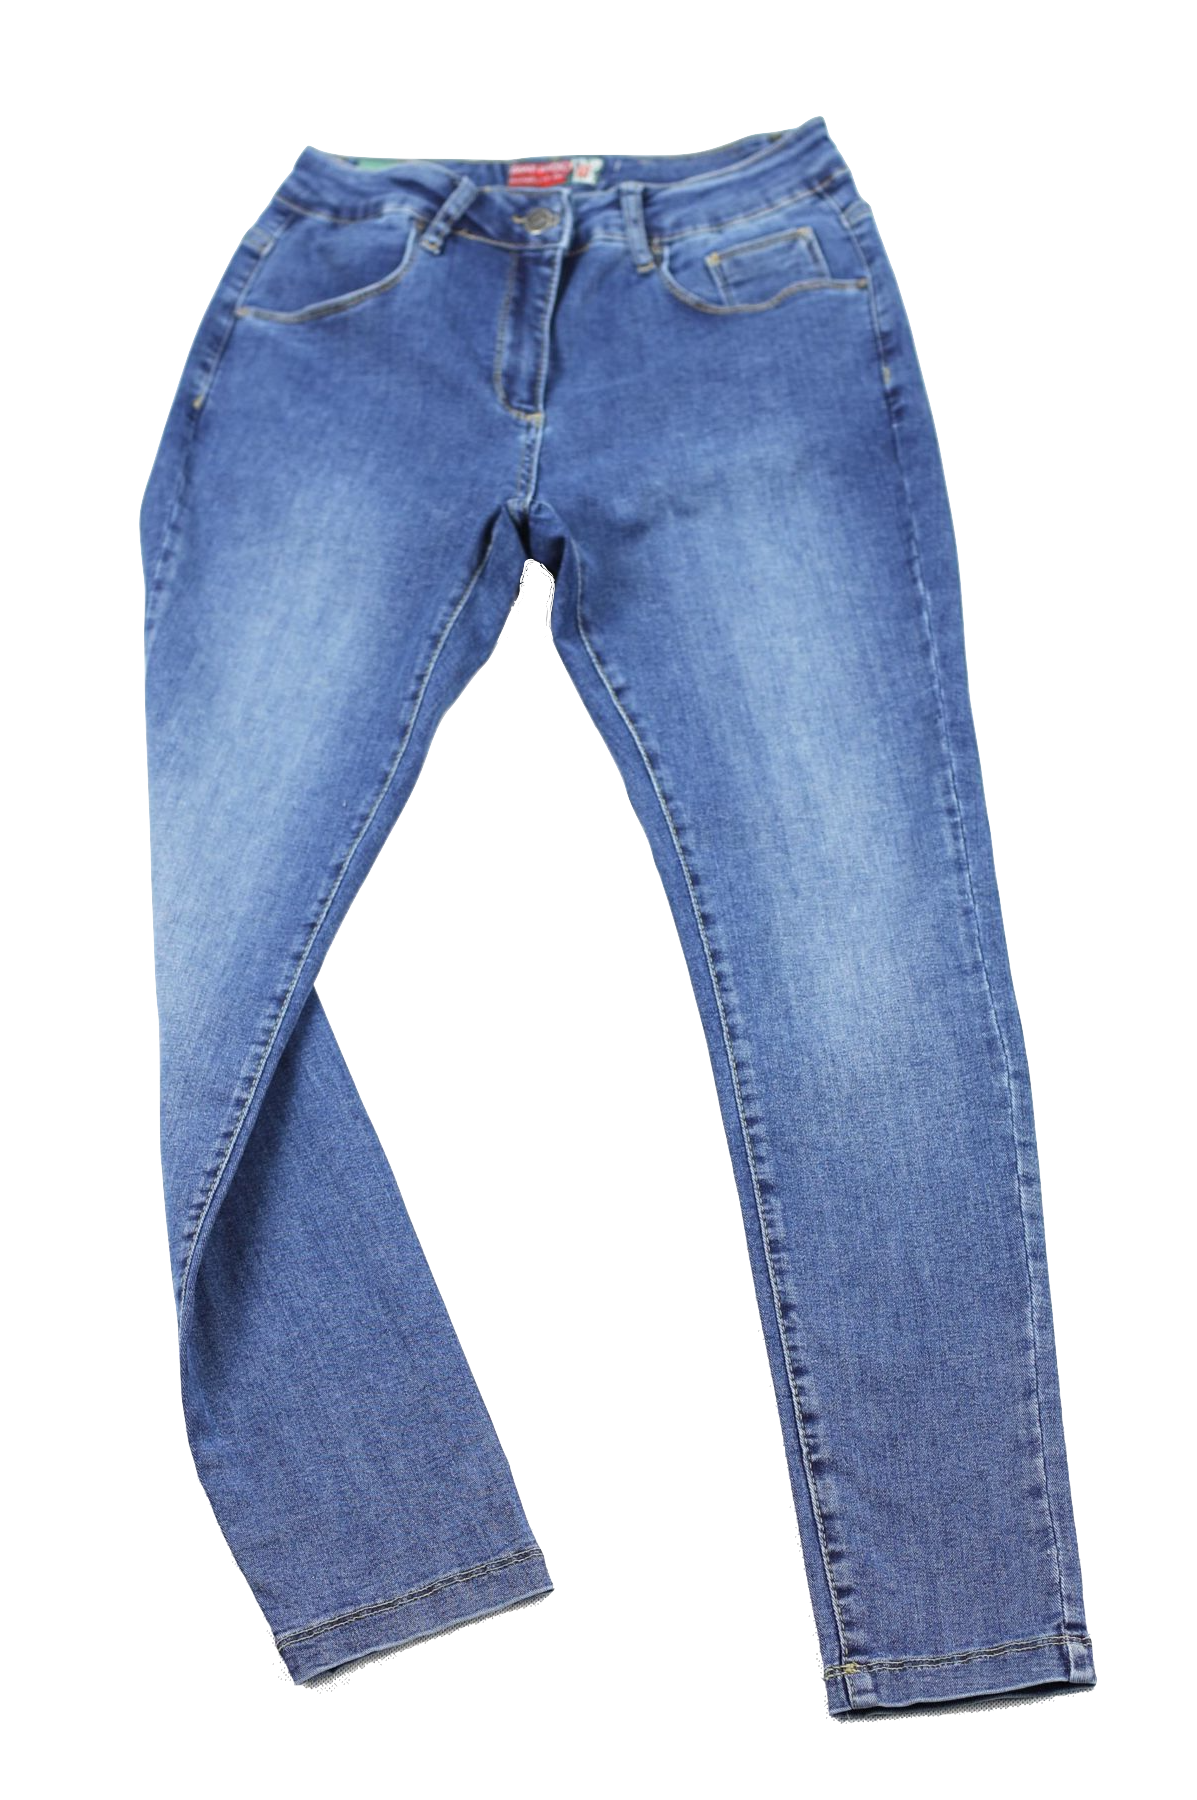 Damskie jeansy power strecz, ciemnoniebieskie, delikatne przetarcie, nogawka wąska – slim